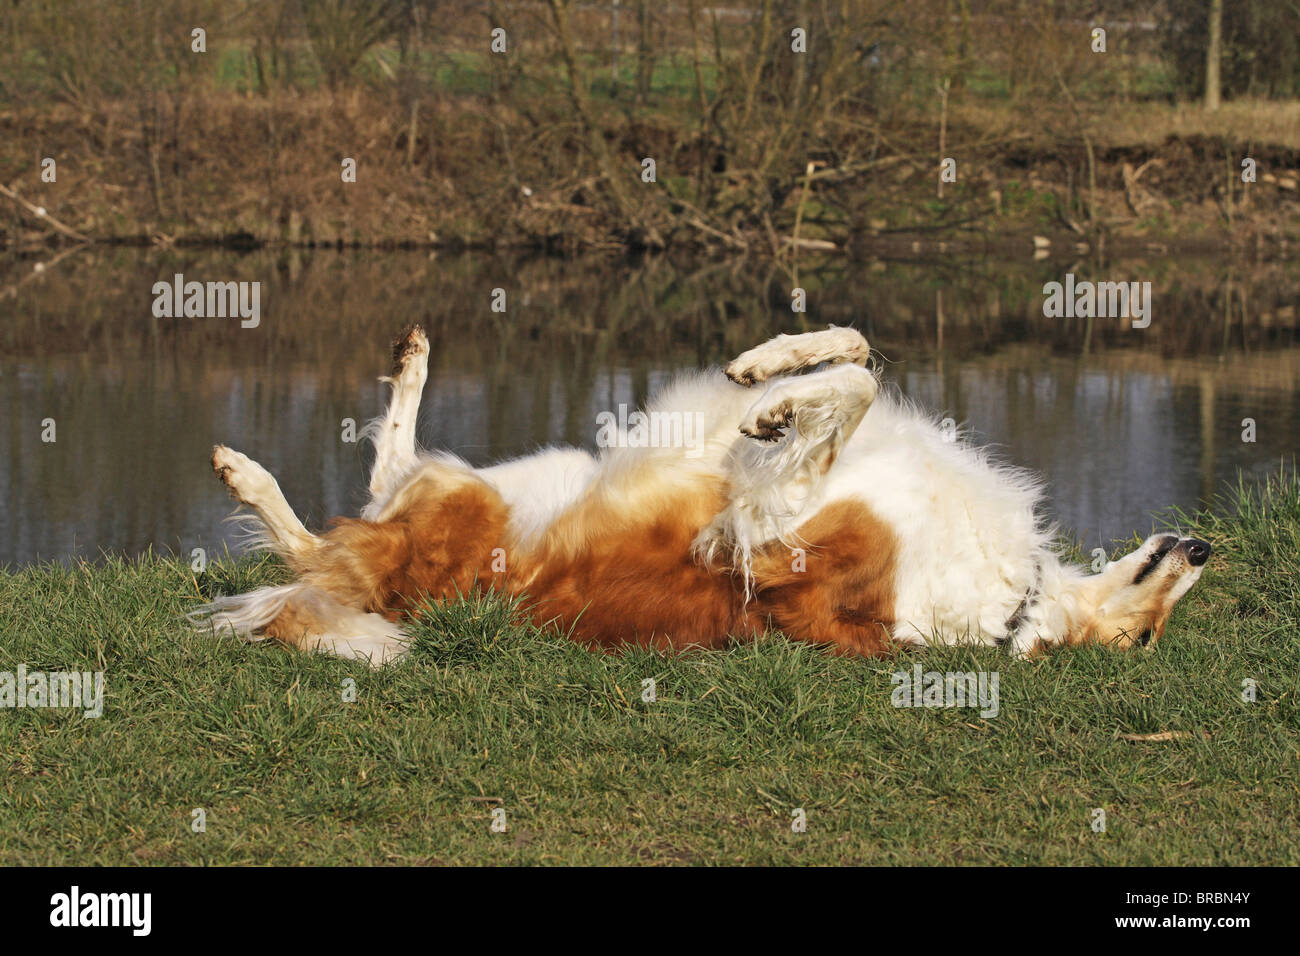 Barsoi-Hund - auf der Wiese liegend Stockfoto